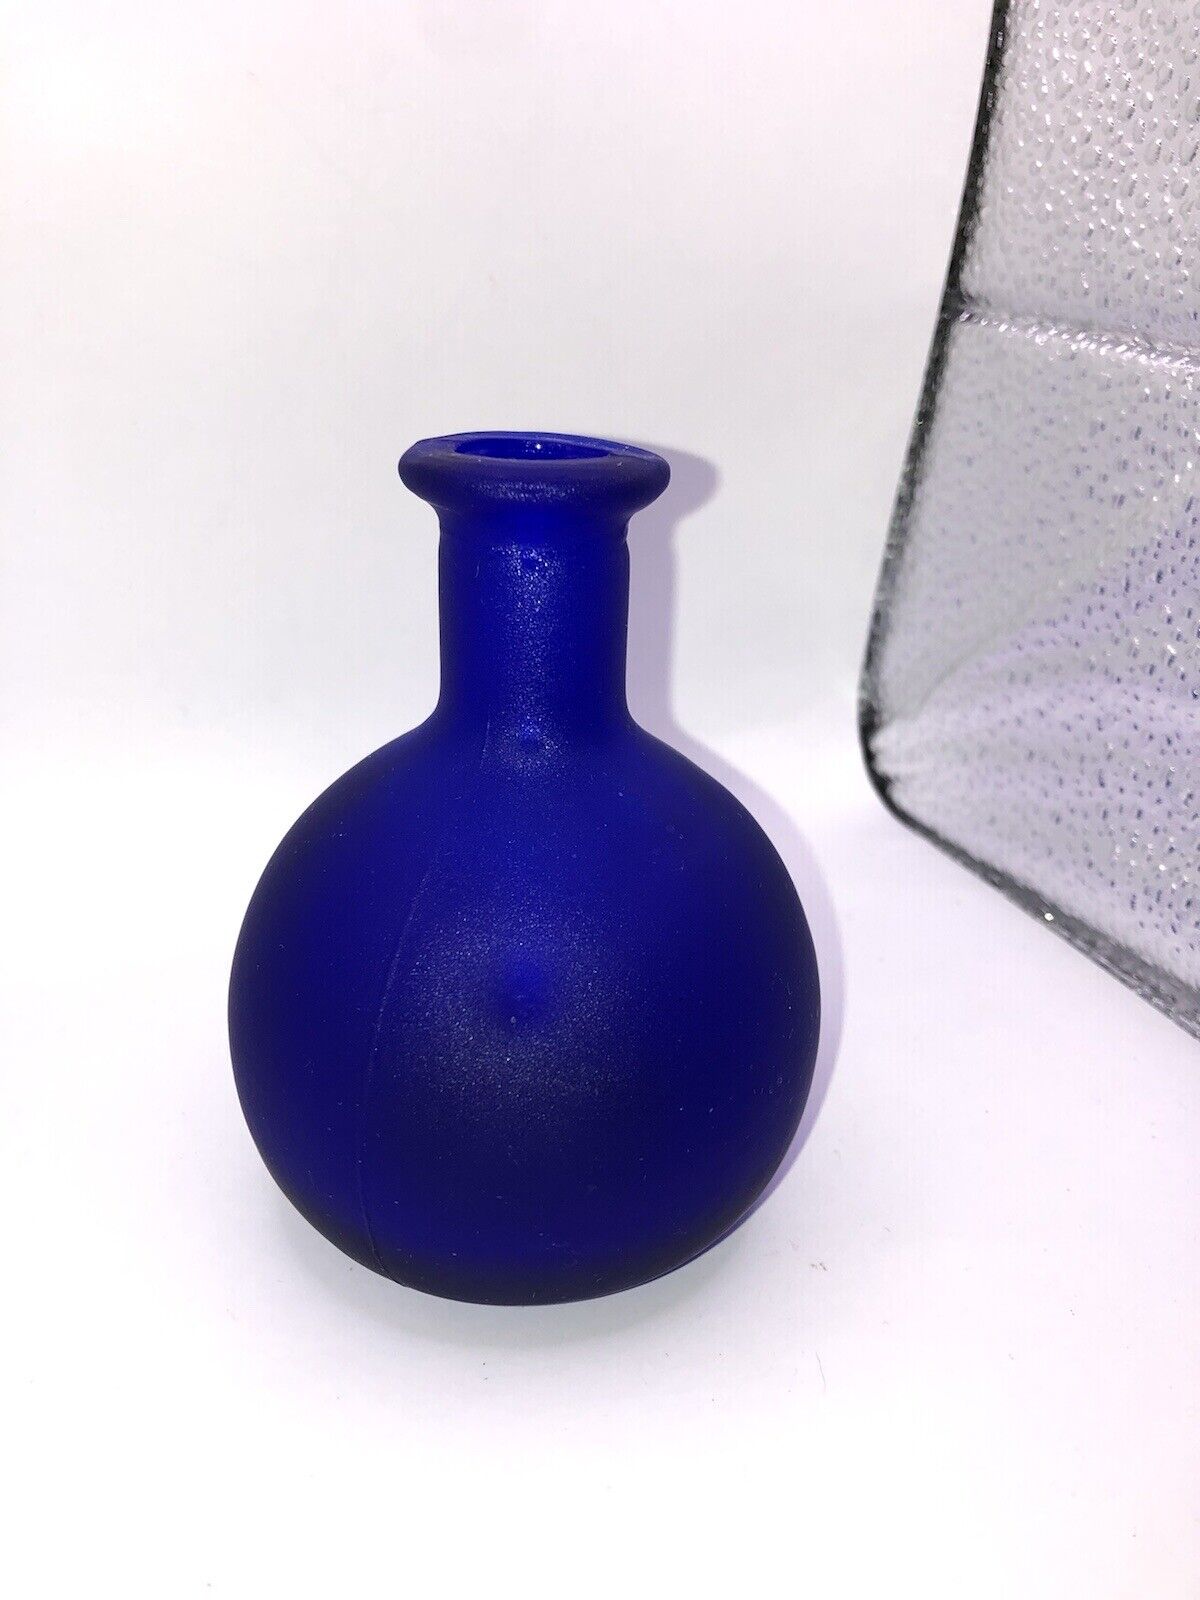 Vintage Mid Century Modern Colbalt Blue Glass Bud Vase Fat Round Textured EUC